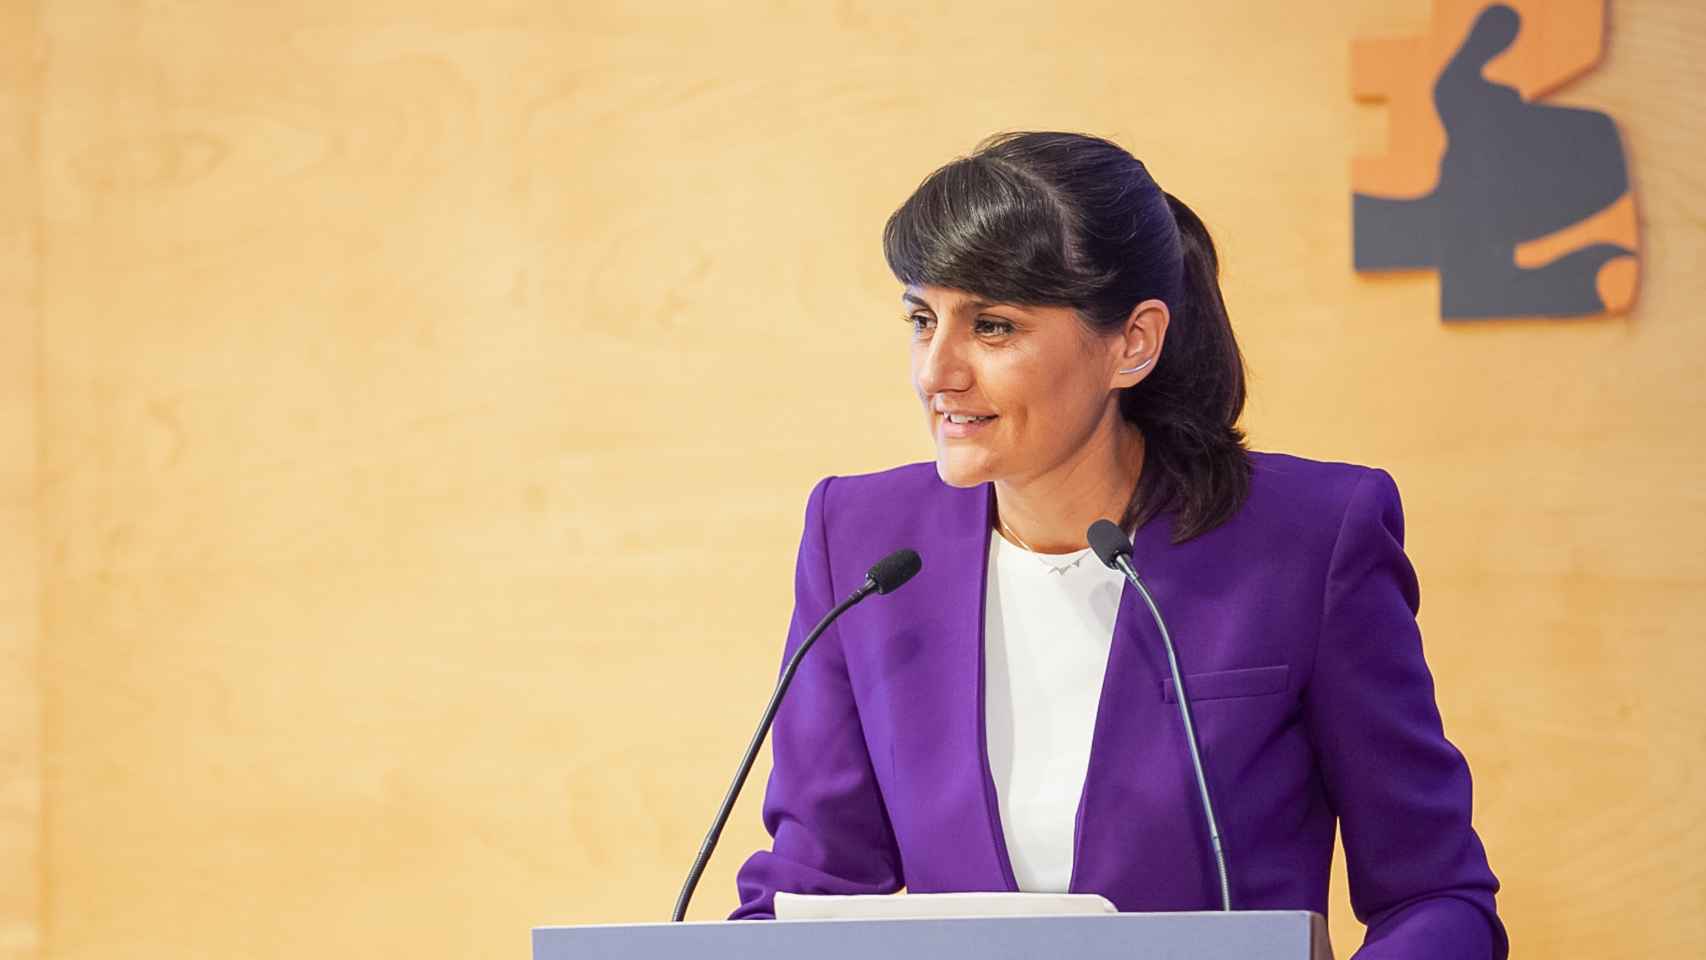 María González Veracruz, secretaria de Estado de Telecomunicaciones e Infraestructuras Digitales